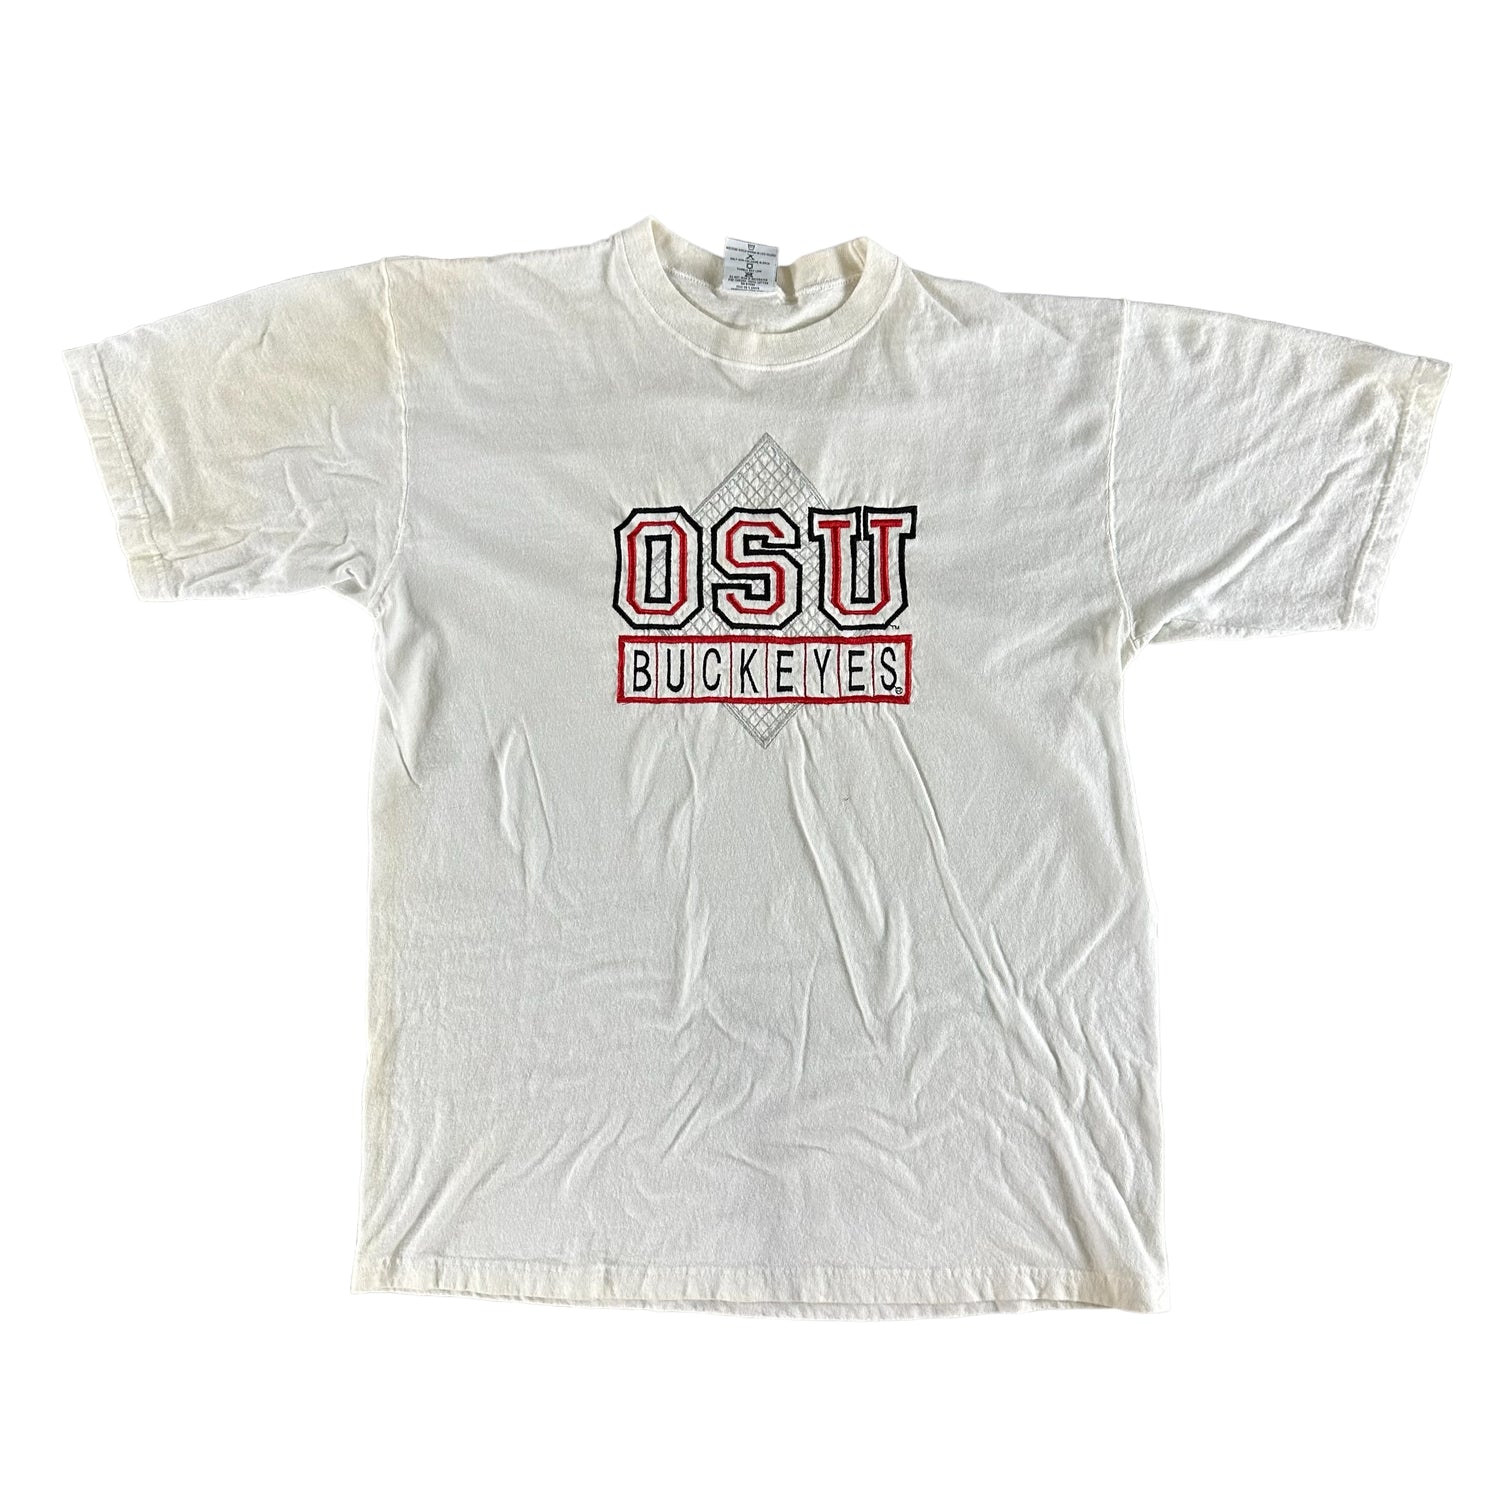 Vintage 1990s Ohio State University T-shirt size Large